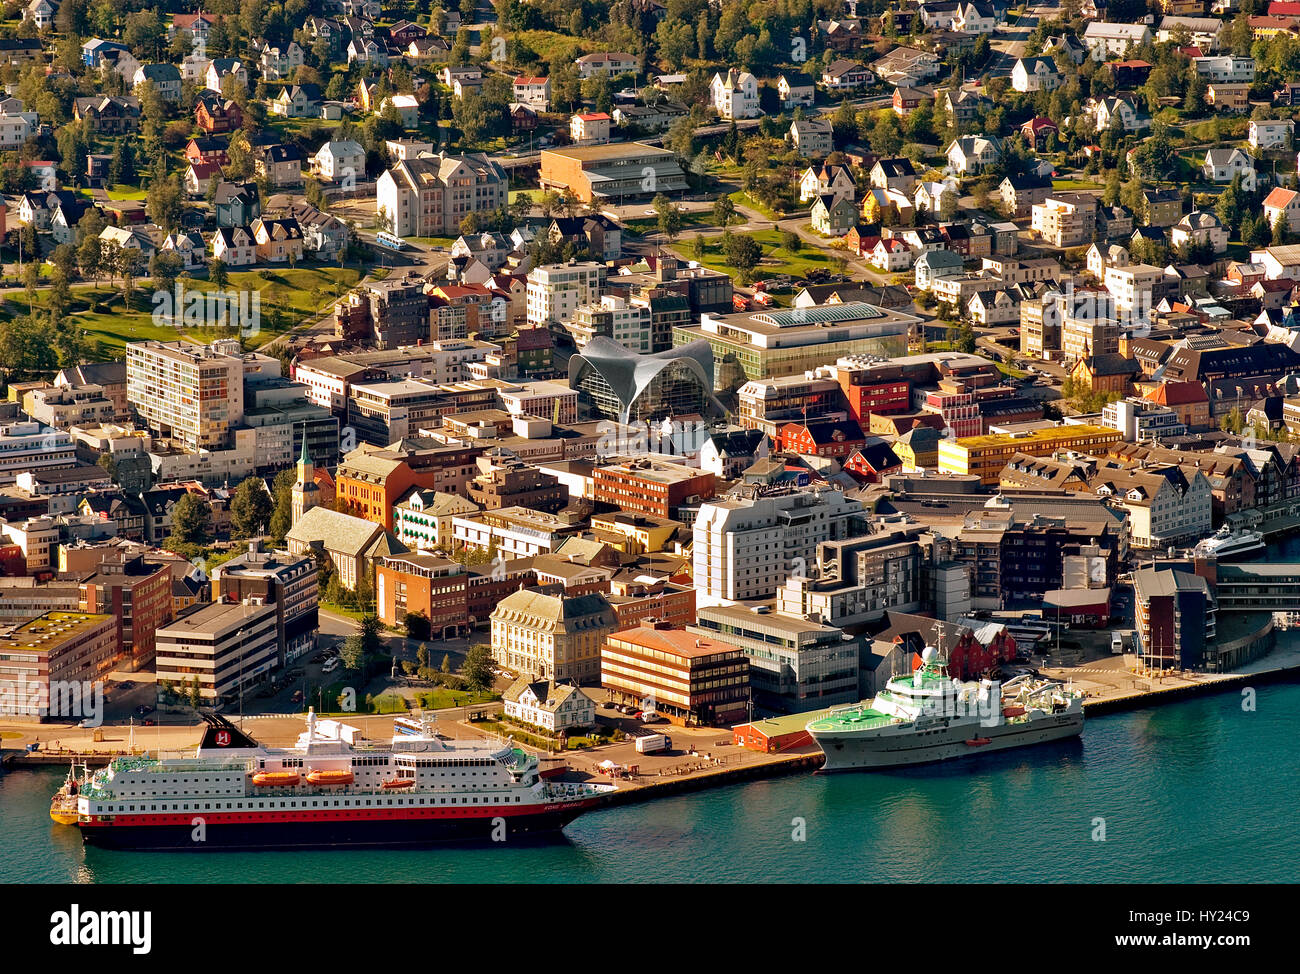 Ce stock photo montre la ville et le port de Tromsø en Norvège du Nord. L'image est tirée de la montagne Storsteinen qui est juste au-dessus de la c Banque D'Images